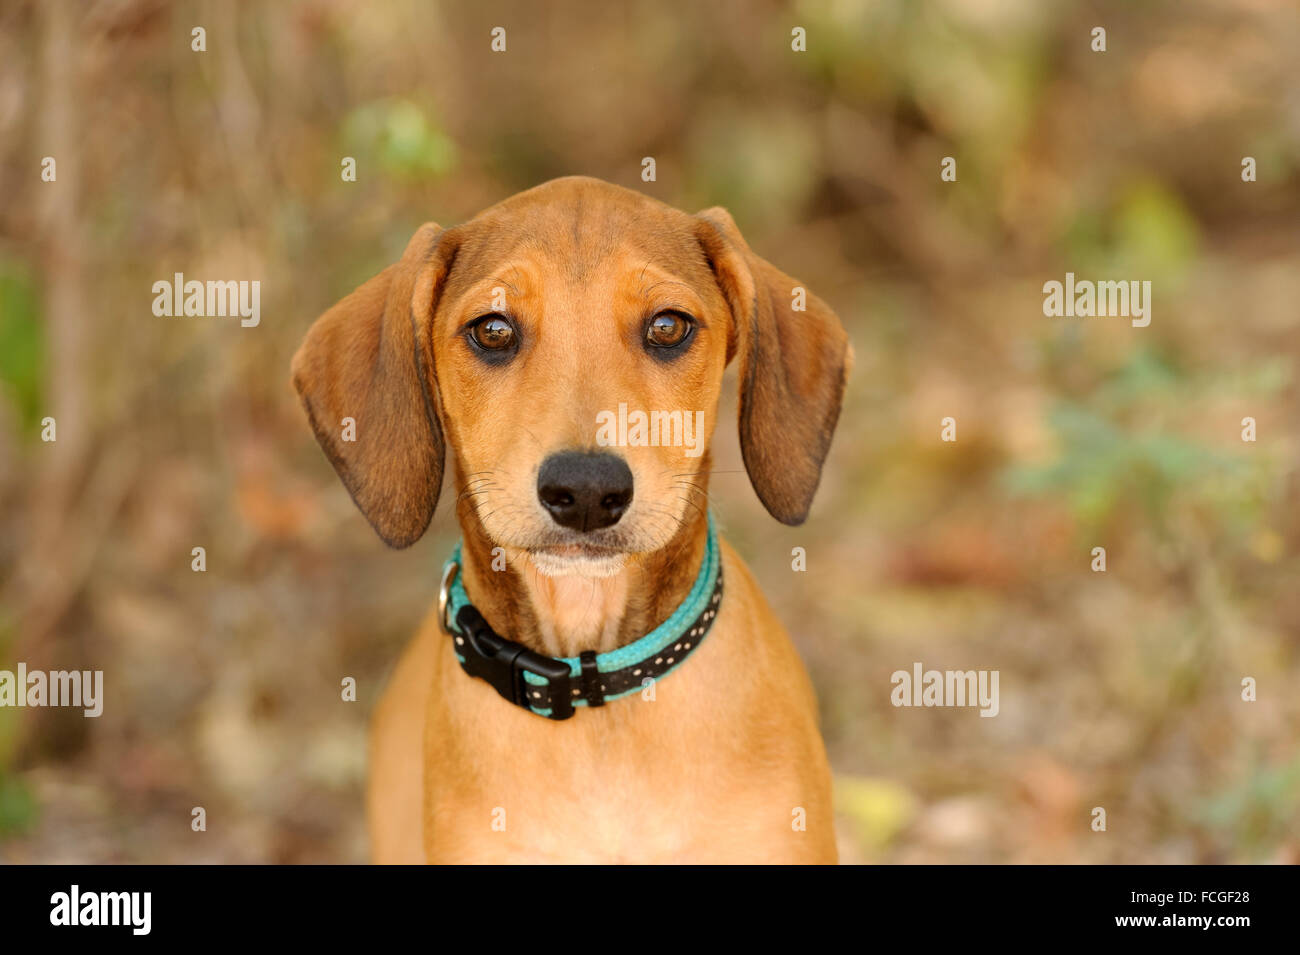 Neugierig Hund ist ein netter Hund im freien Blick auf Sie mit seinem lustigen Gesicht. Fotografiert mit Nikon D3s Kamera. Stockfoto